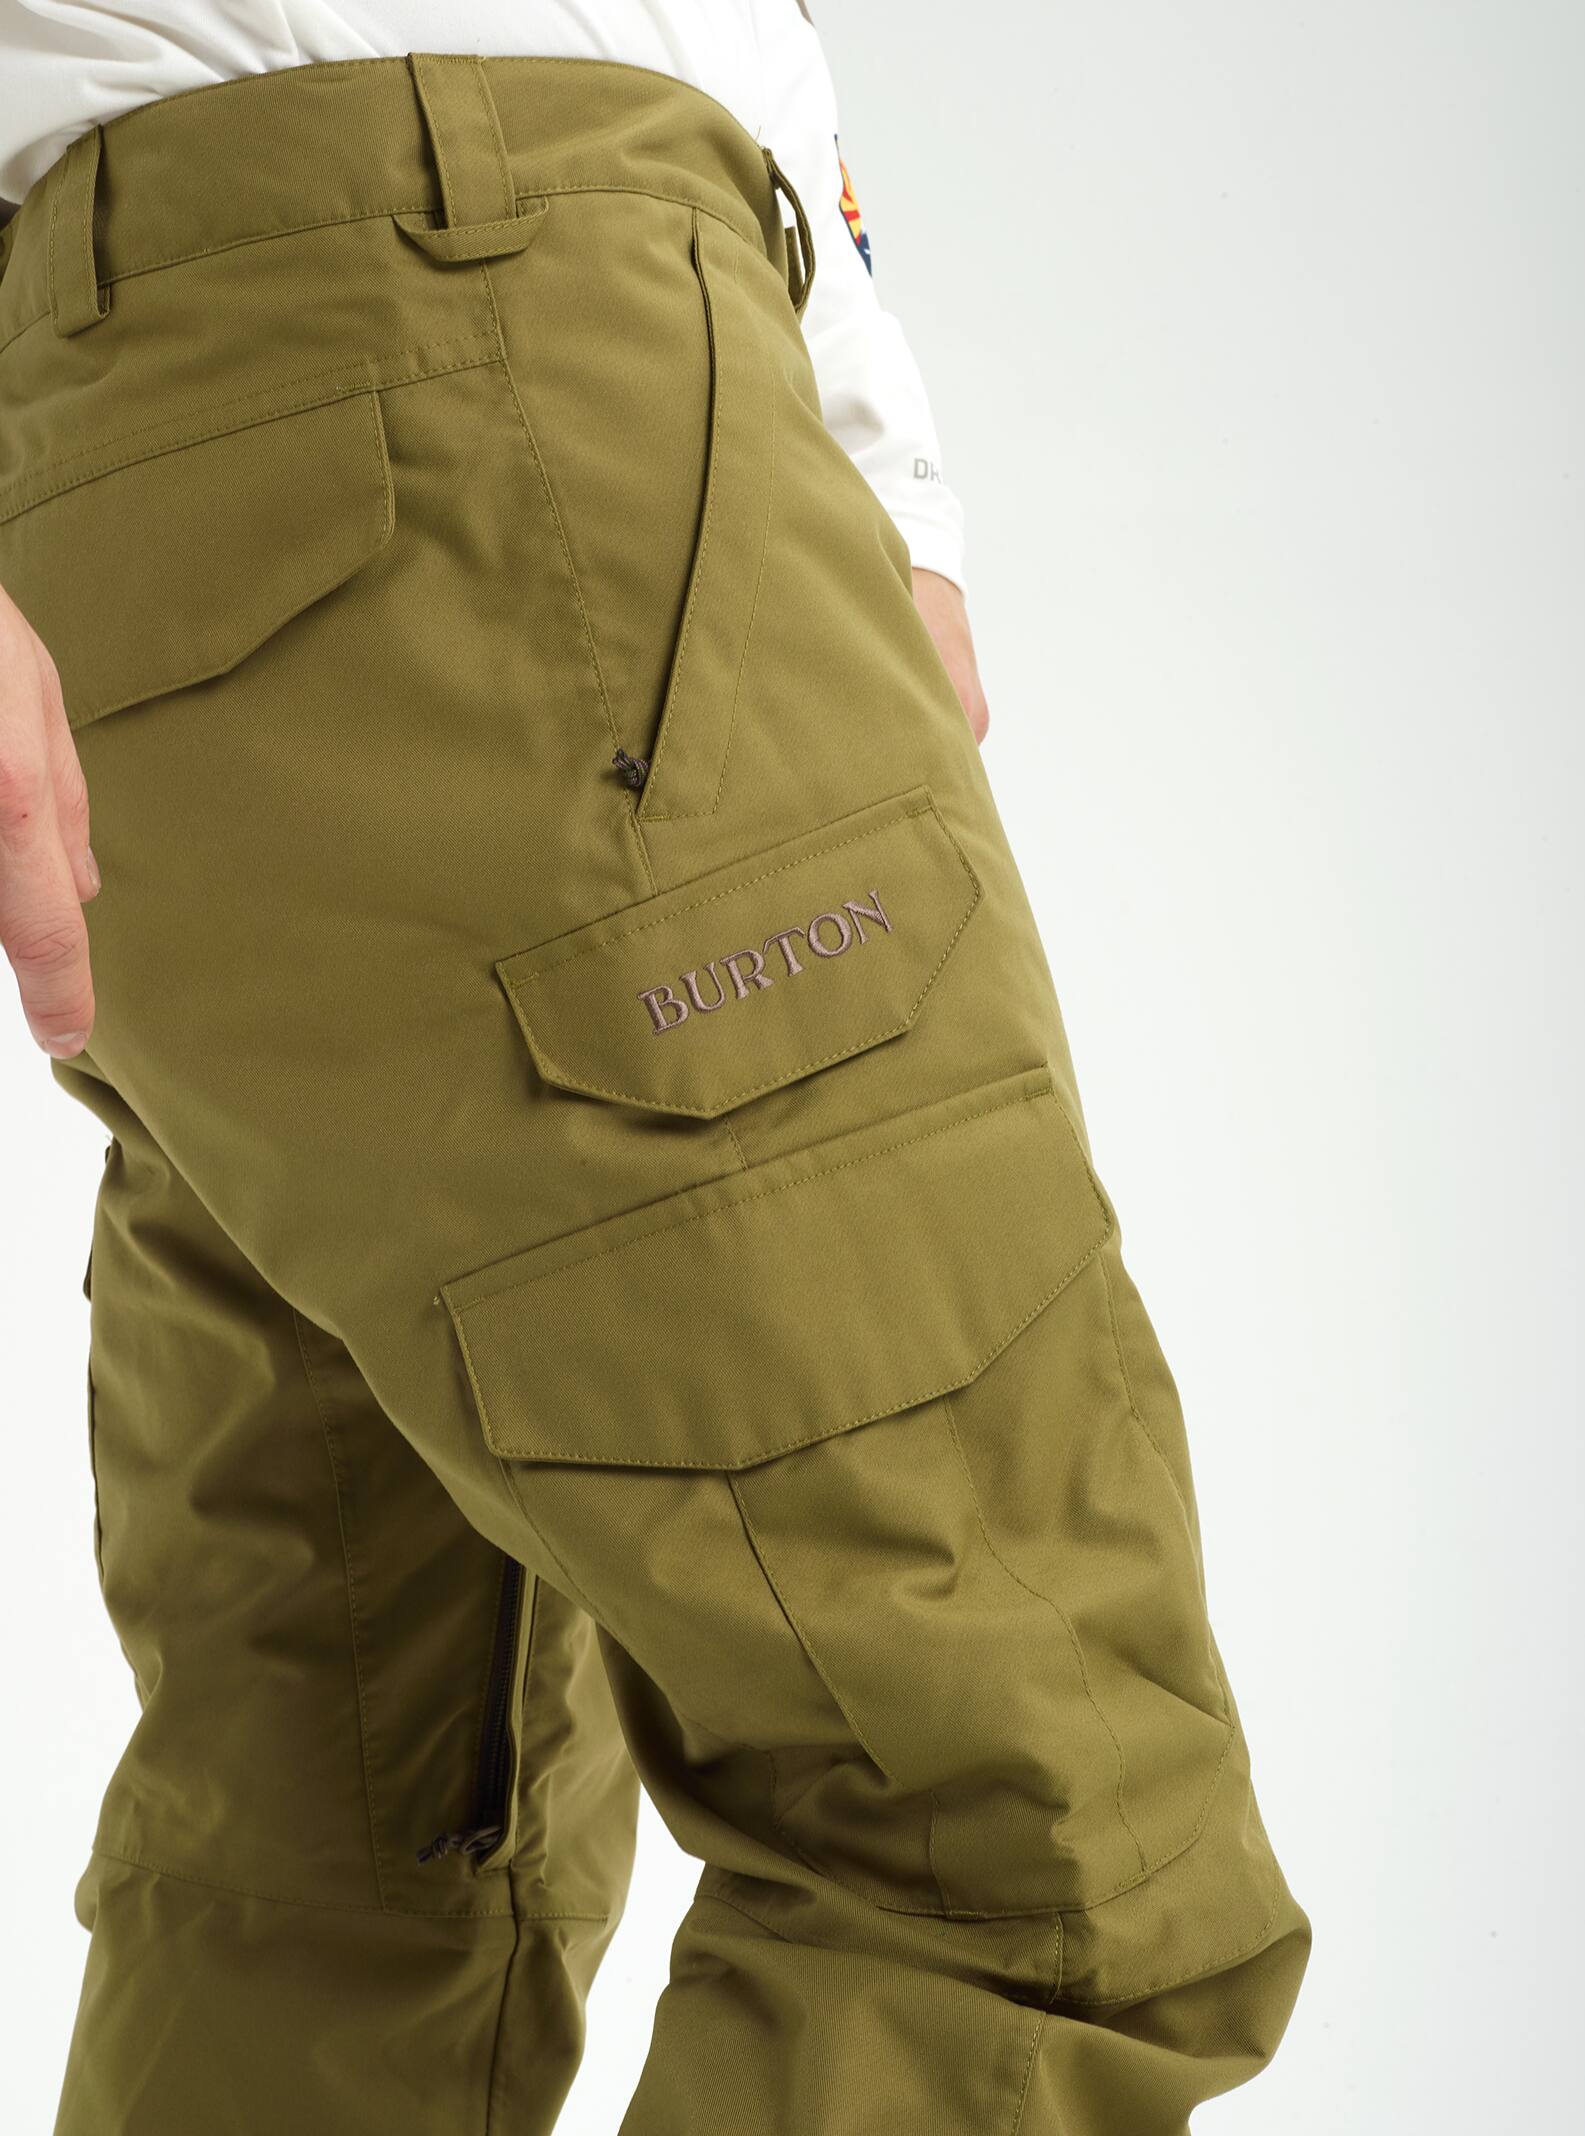 カーゴパンツレギュラーフィット(Burton Cargo Pant - Regular Fit)パンツ(メンズ) | バートン(BURTON)2020公式通販サイト  JP